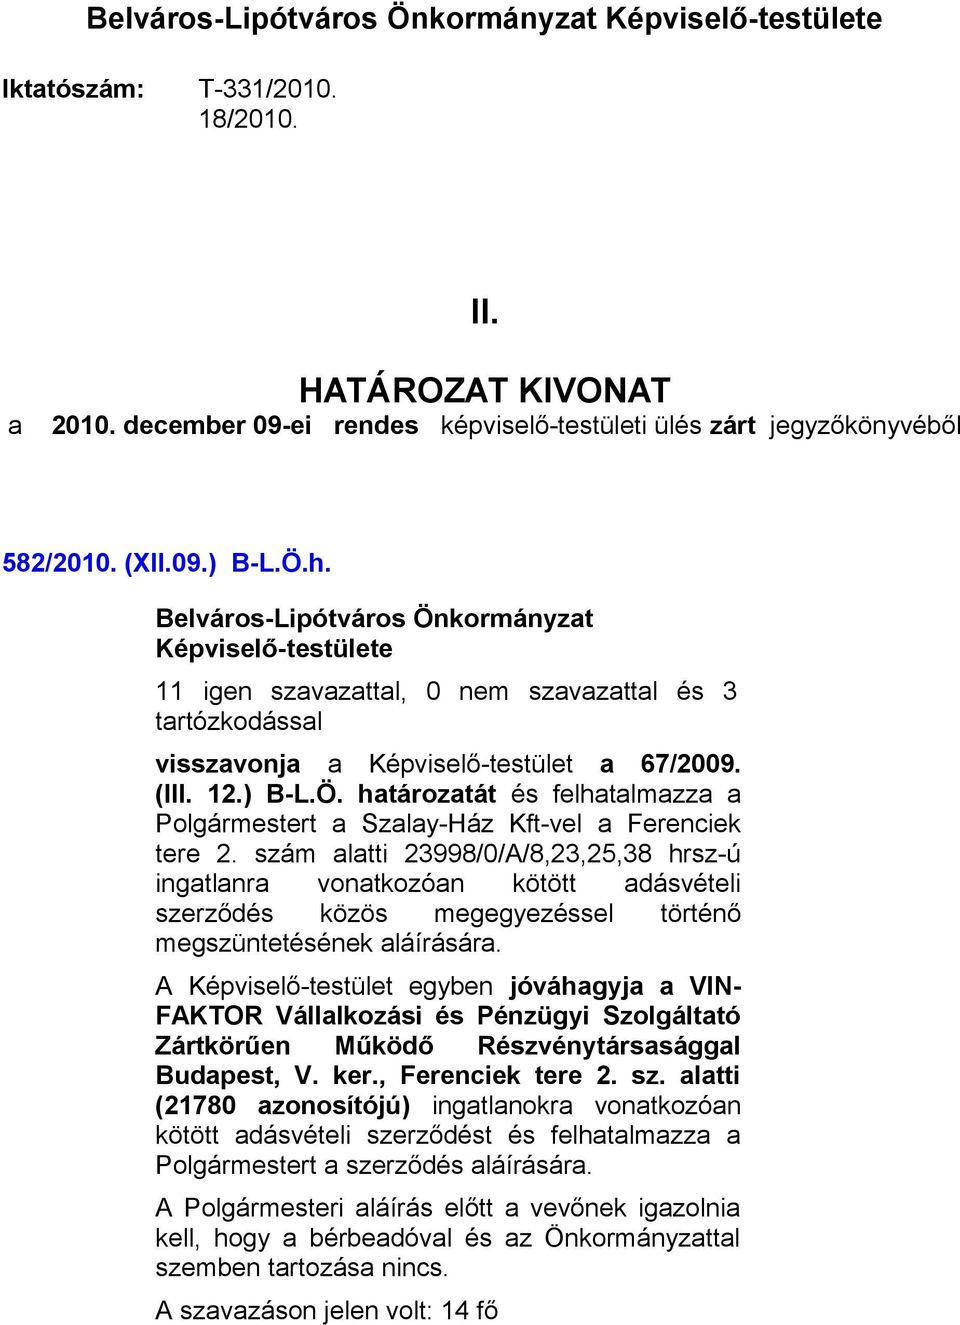 szám alatti 23998/0/A/8,23,25,38 hrsz-ú ingatlanra vonatkozóan kötött adásvételi szerződés közös megegyezéssel történő megszüntetésének aláírására.